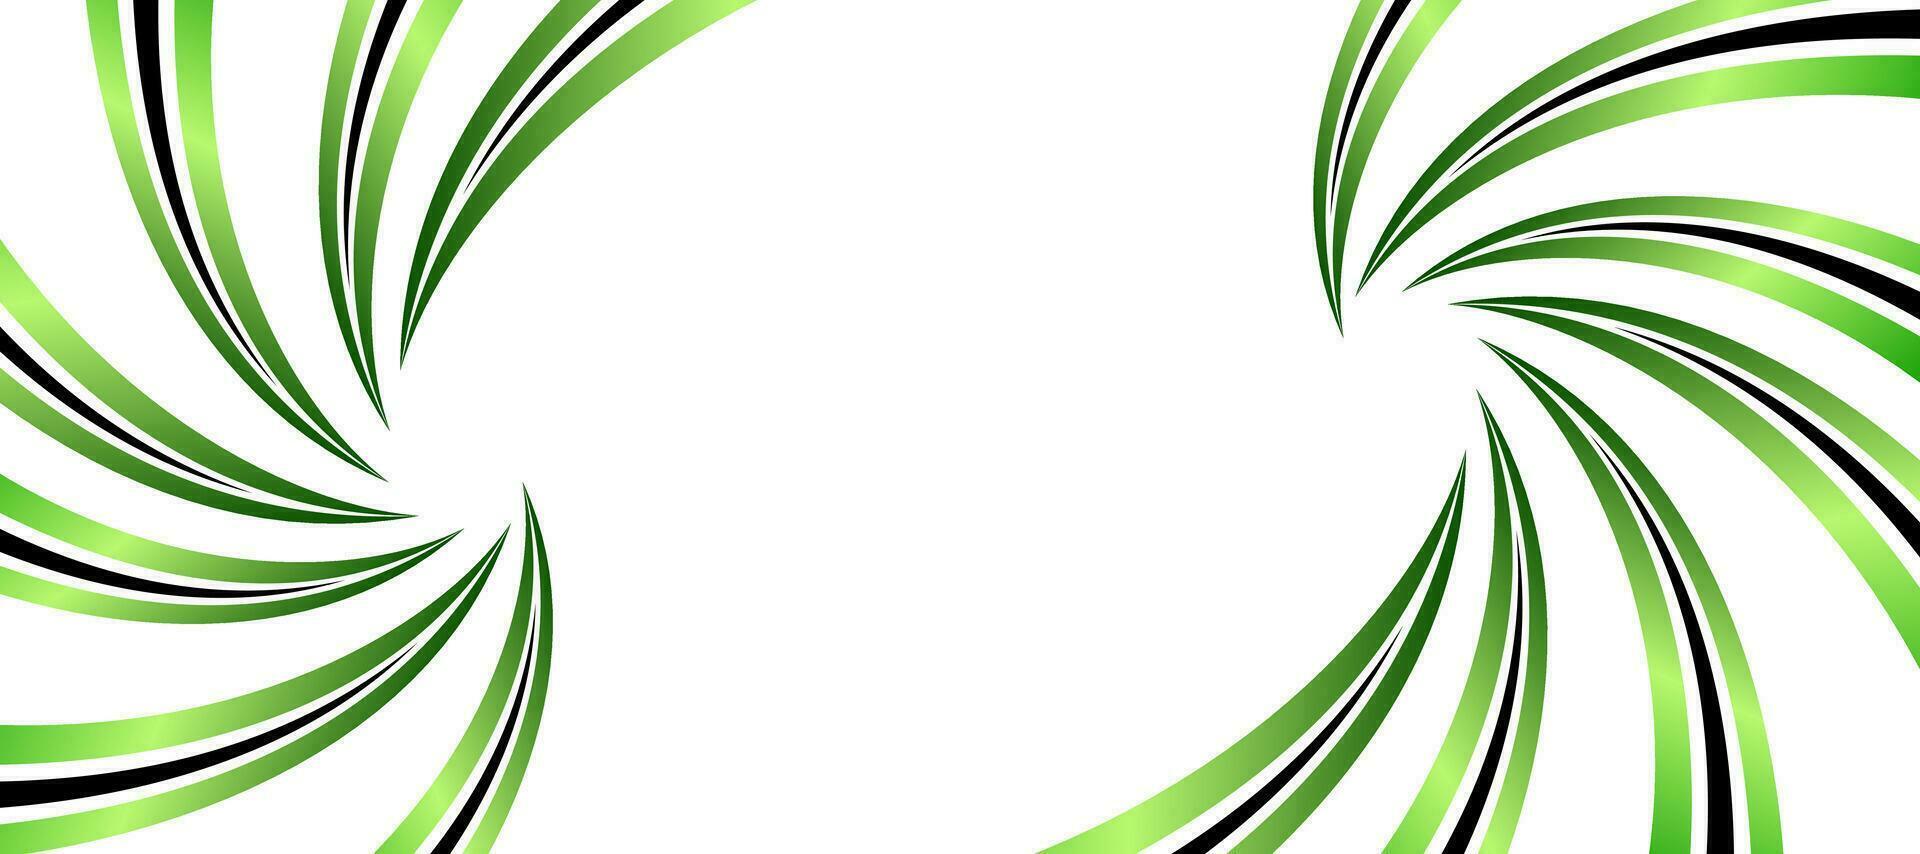 abstract green gradient spiral vortex banner template background vector